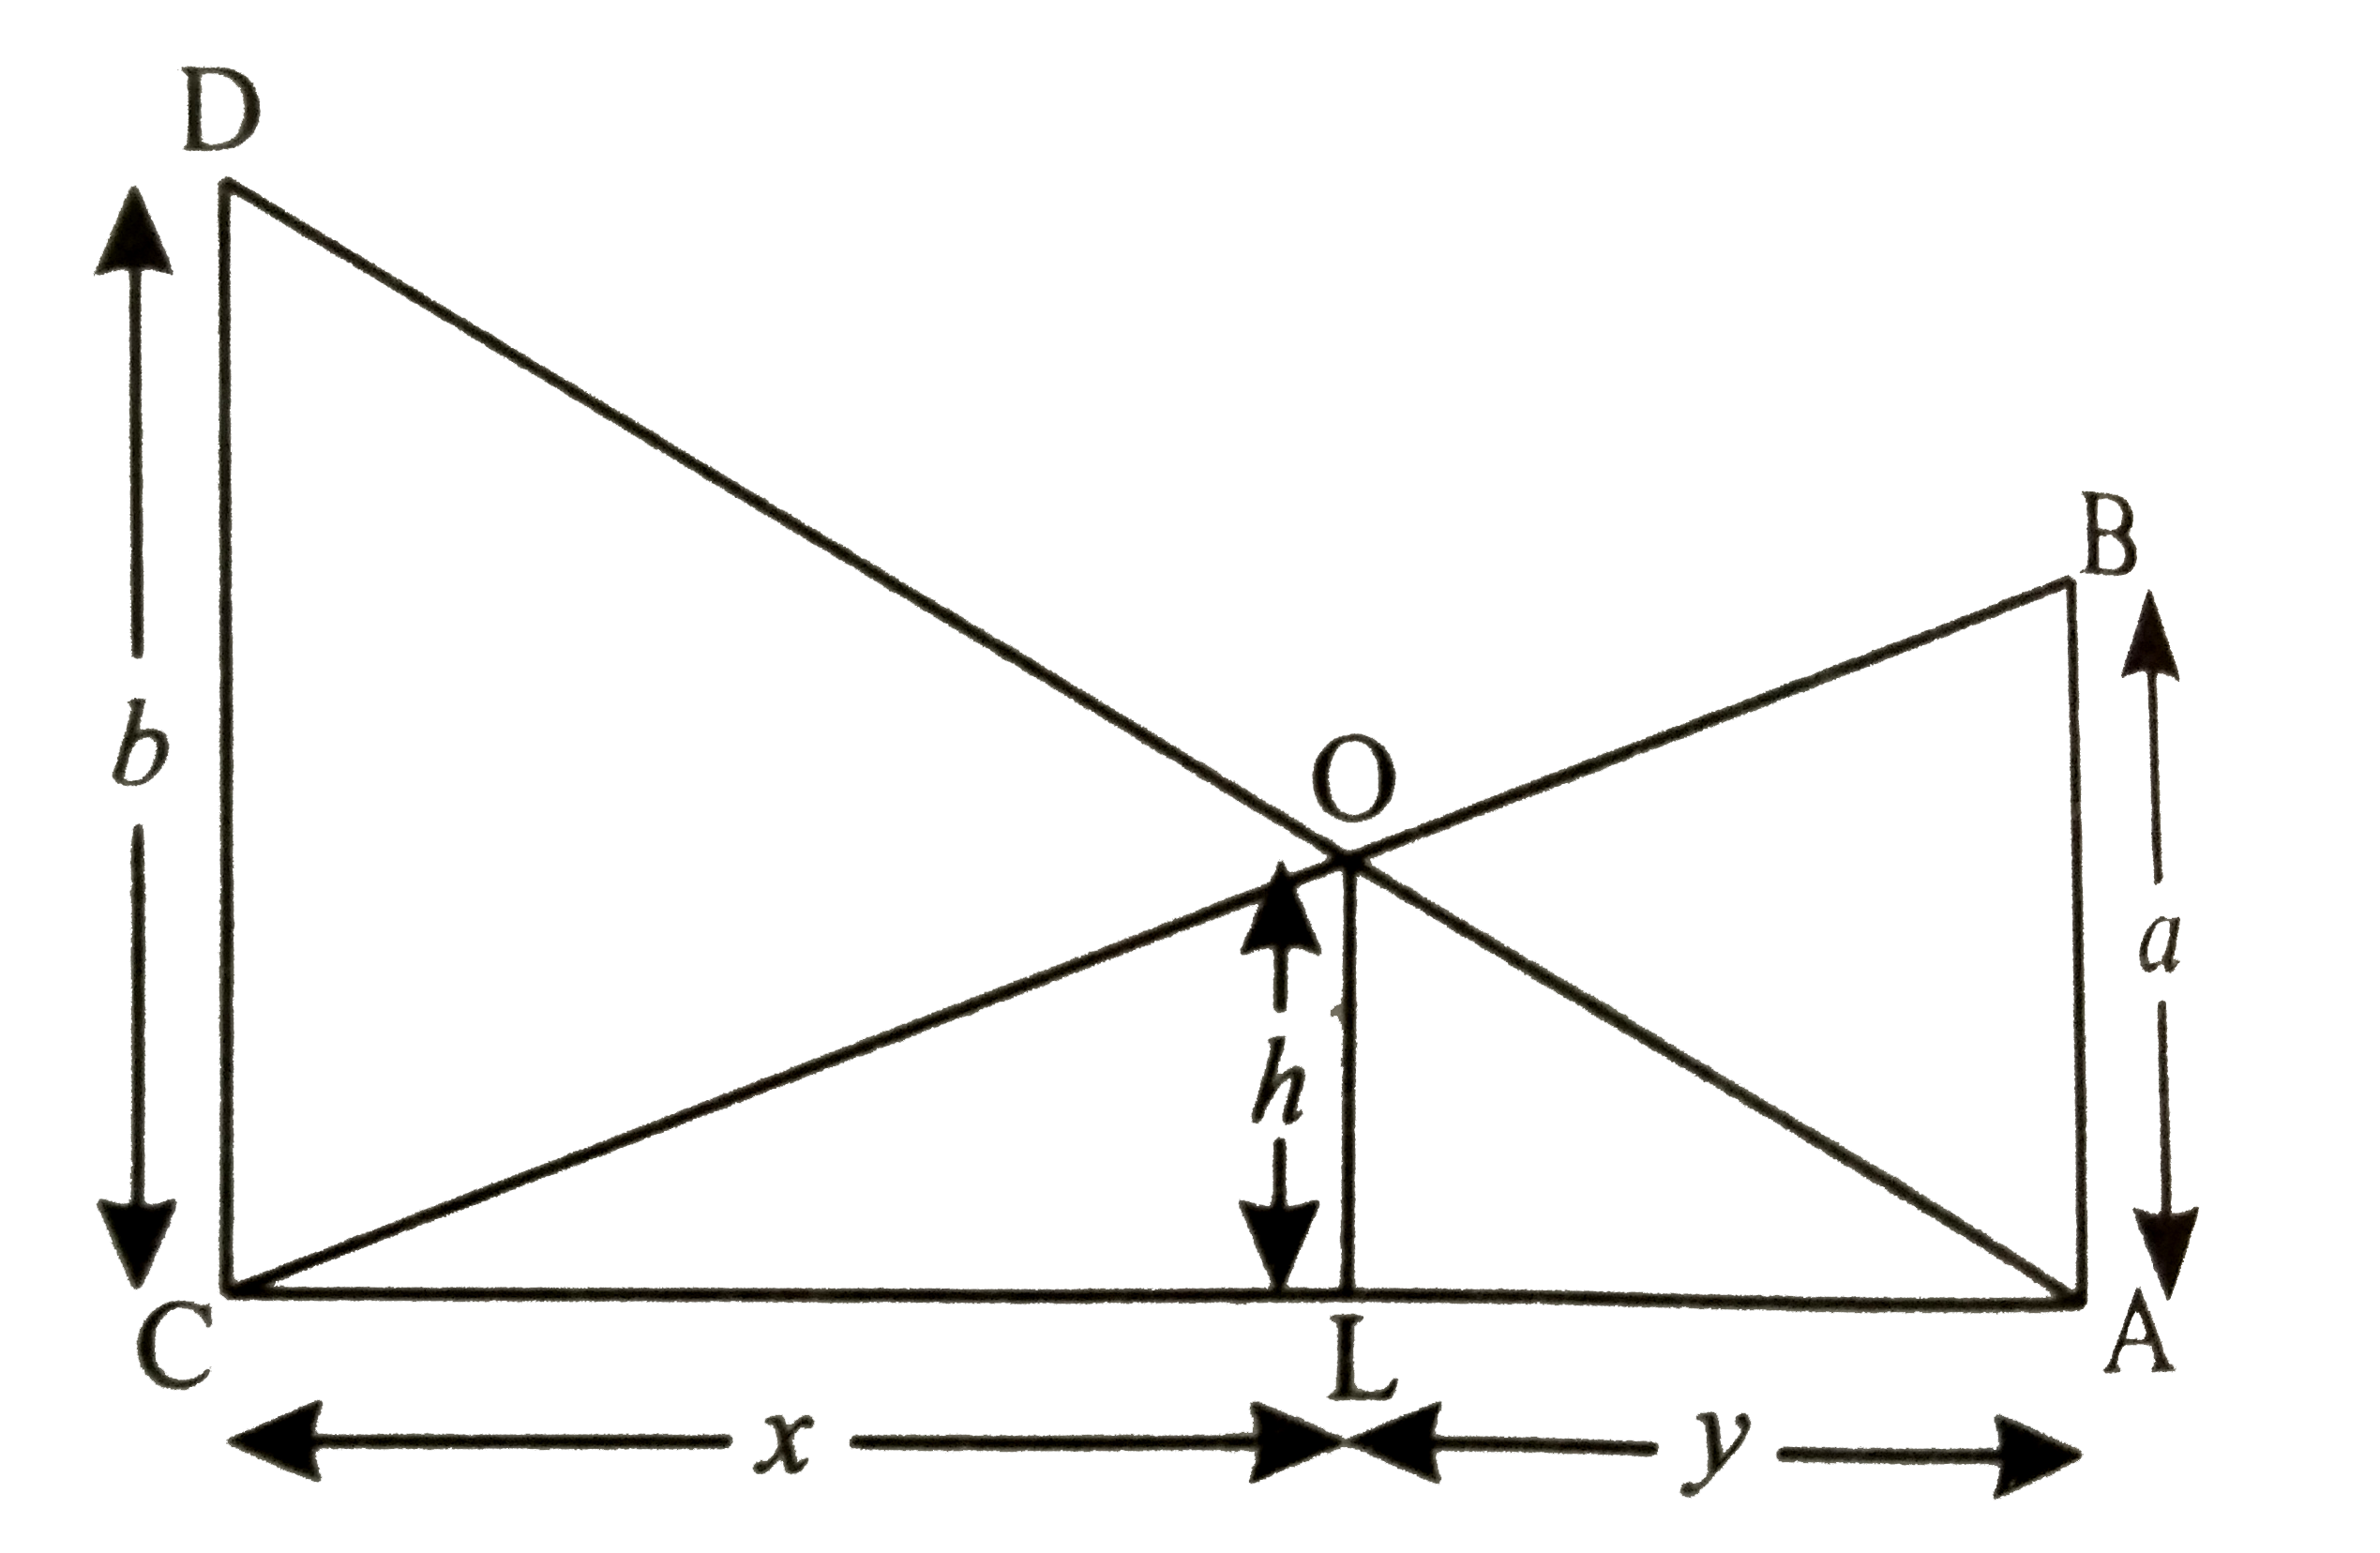 a व b मीटर ऊँचाई के तथा p मीटर की दुरी पर स्थित दो खम्बे है | सिद्ध कीजिए कि दोनों खम्बो के शीर्षो को मिलाने वाली रेखा के प्रतिच्छेद बिंदु की ऊँचाई (ab)/(a + b) मीटर होगी |